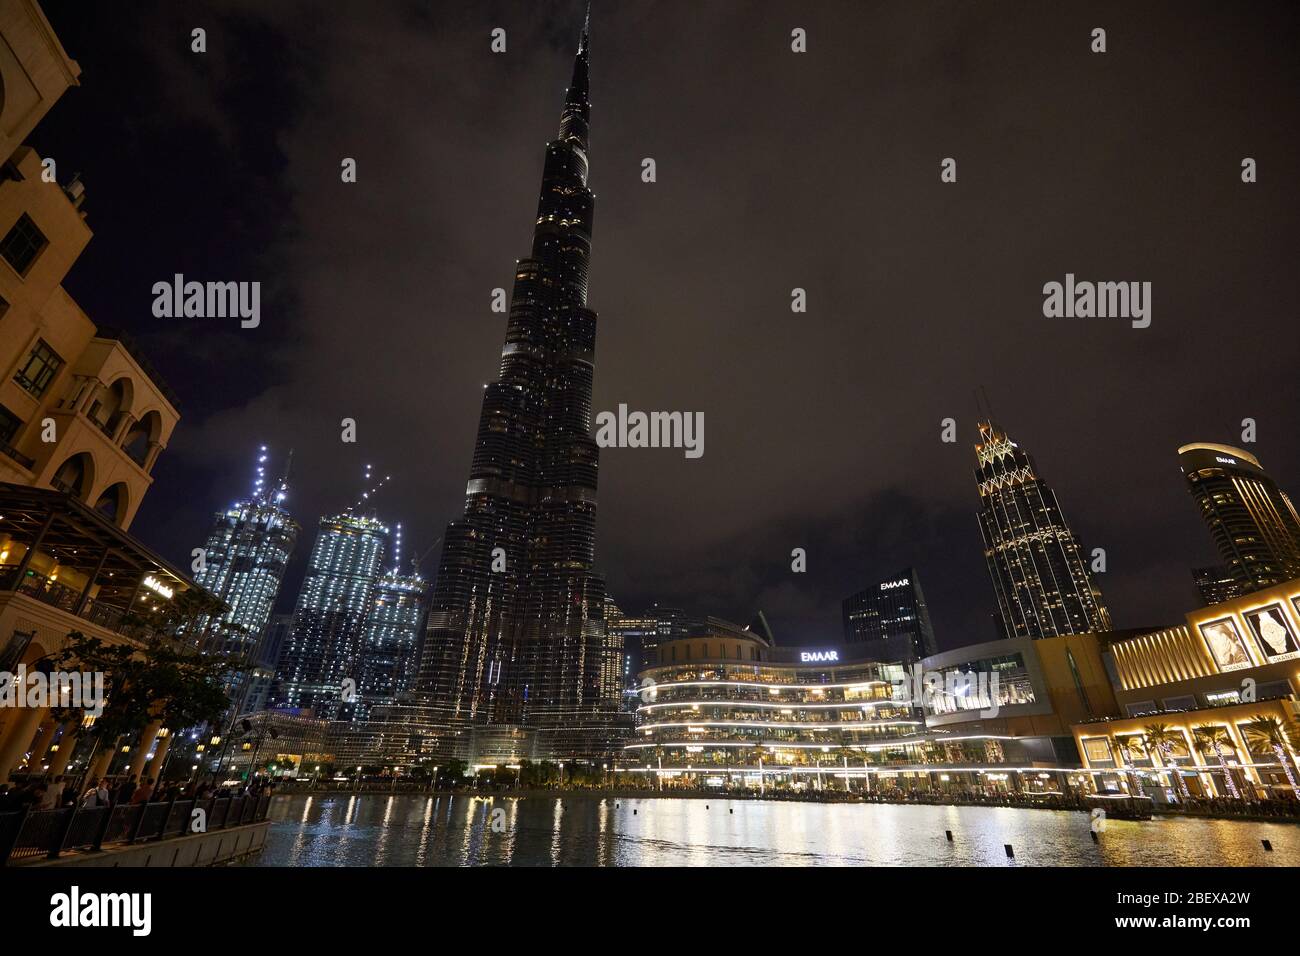 DUBAI, EMIRATI ARABI UNITI - 21 NOVEMBRE 2019: Il grattacielo Burj Khalifa e il Dubai Mall illuminati di notte con persone Foto Stock